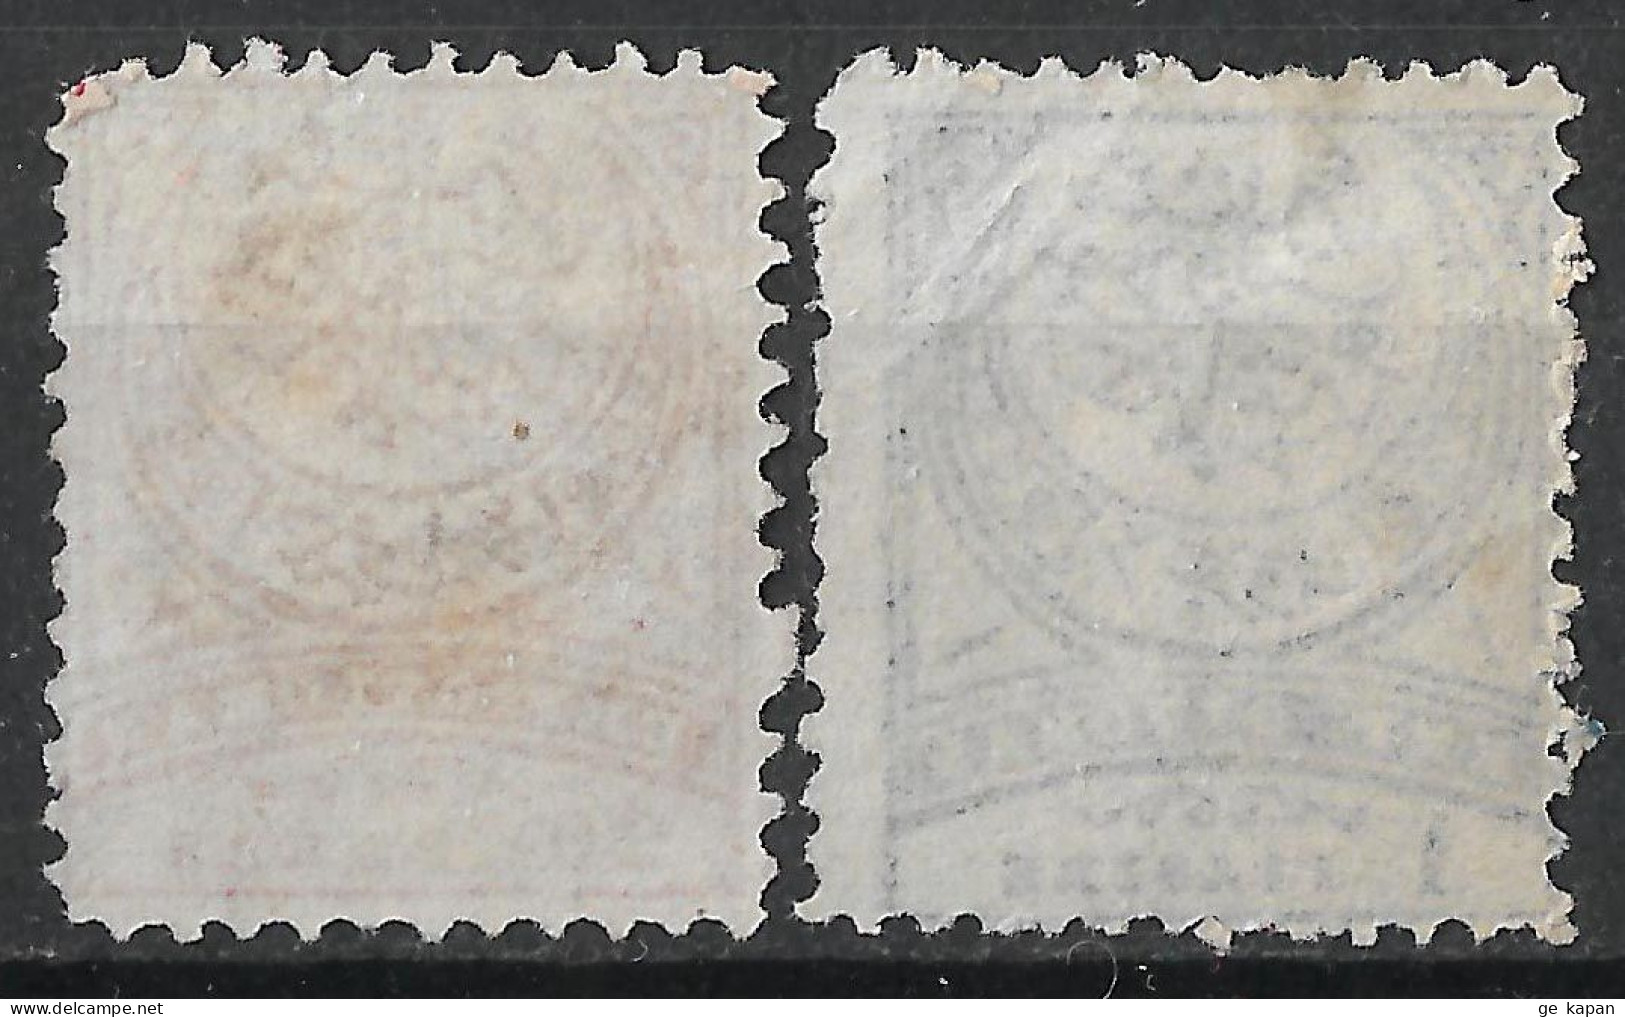 1890 TURKEY Set Of 2 Unused Stamps (Michel # 60B,61aB) CV €16.00 - Ongebruikt